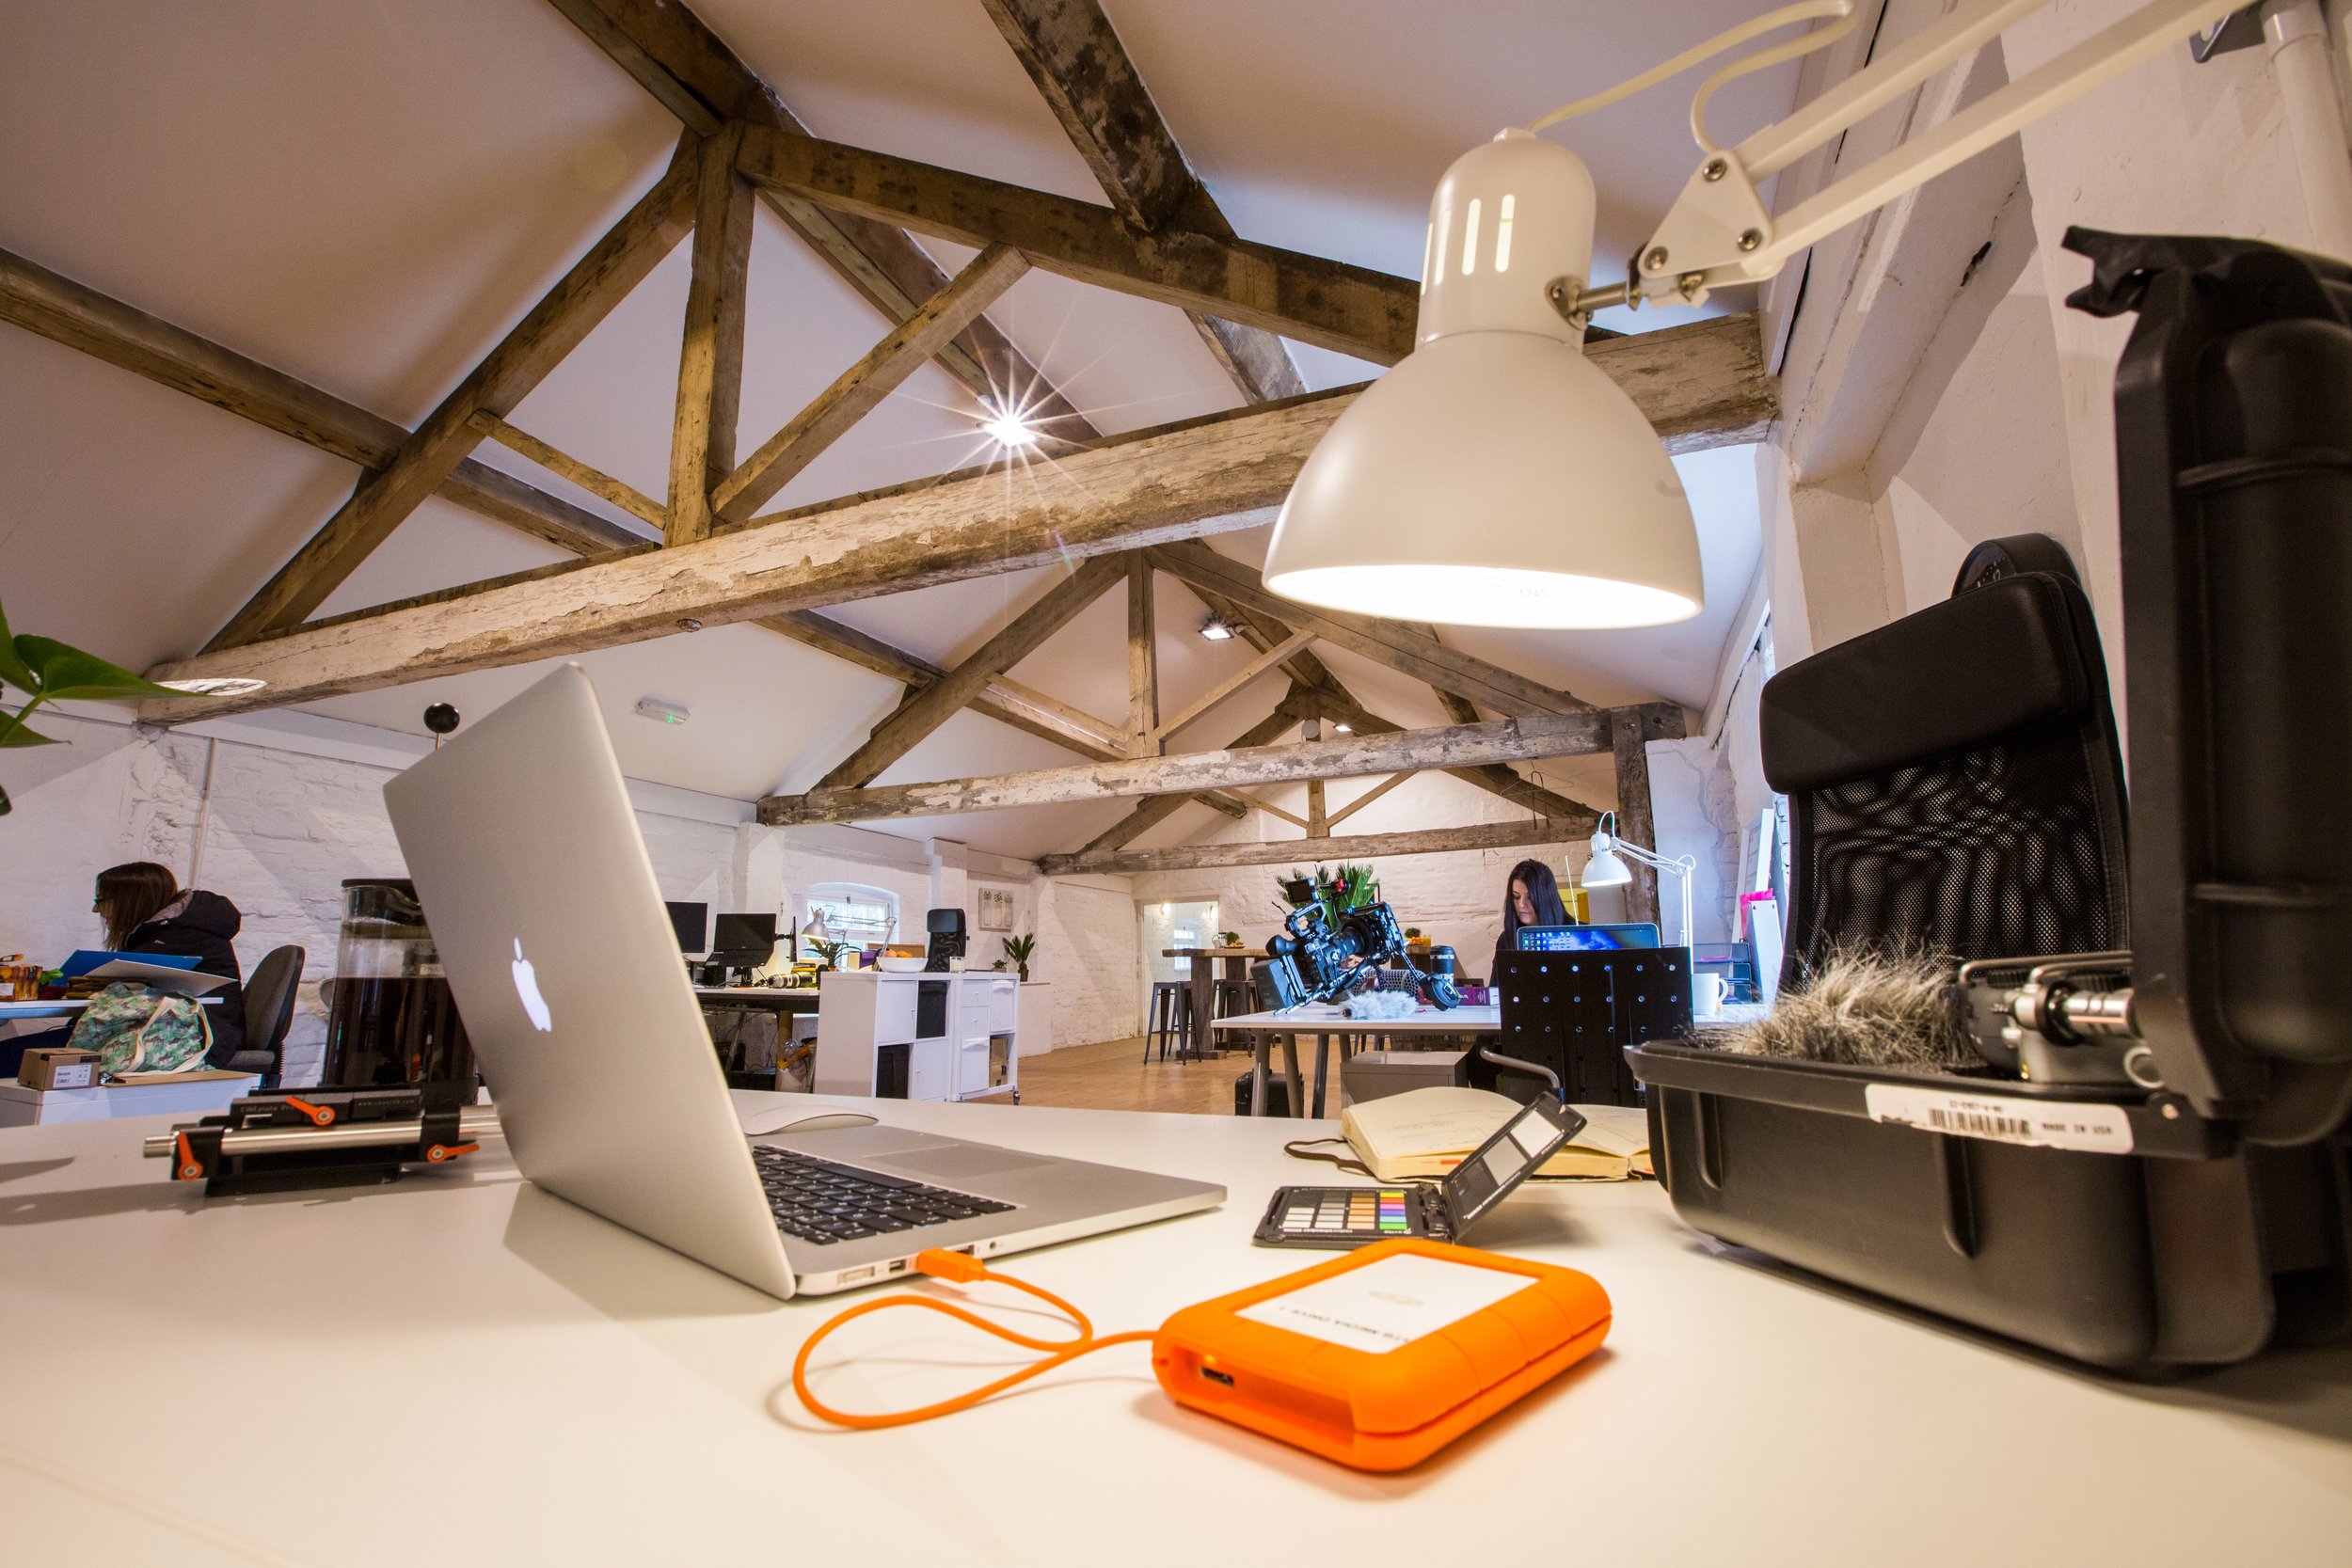 The Best Modern Desk Lamps, Etekcity Dimmable Led Table Desk Lamp